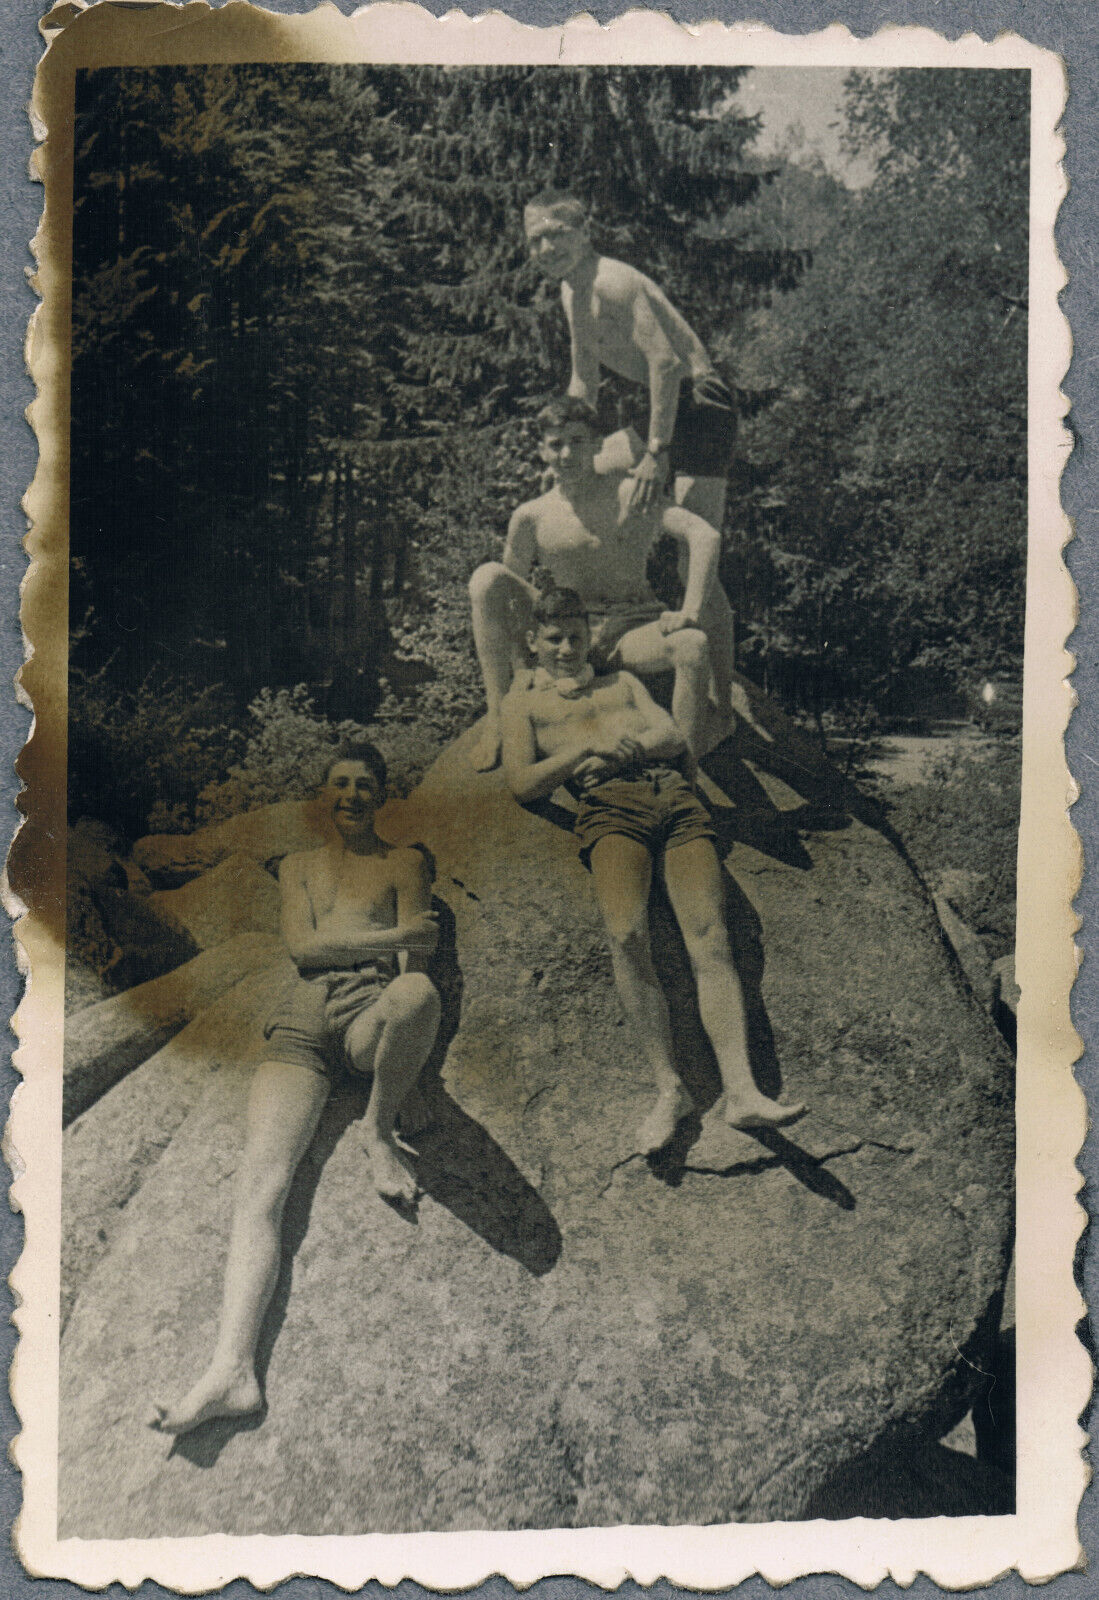 1950s Beefcake Bulge Shirtless Men Trunks Gay Interest Vintage Snapshot Photo